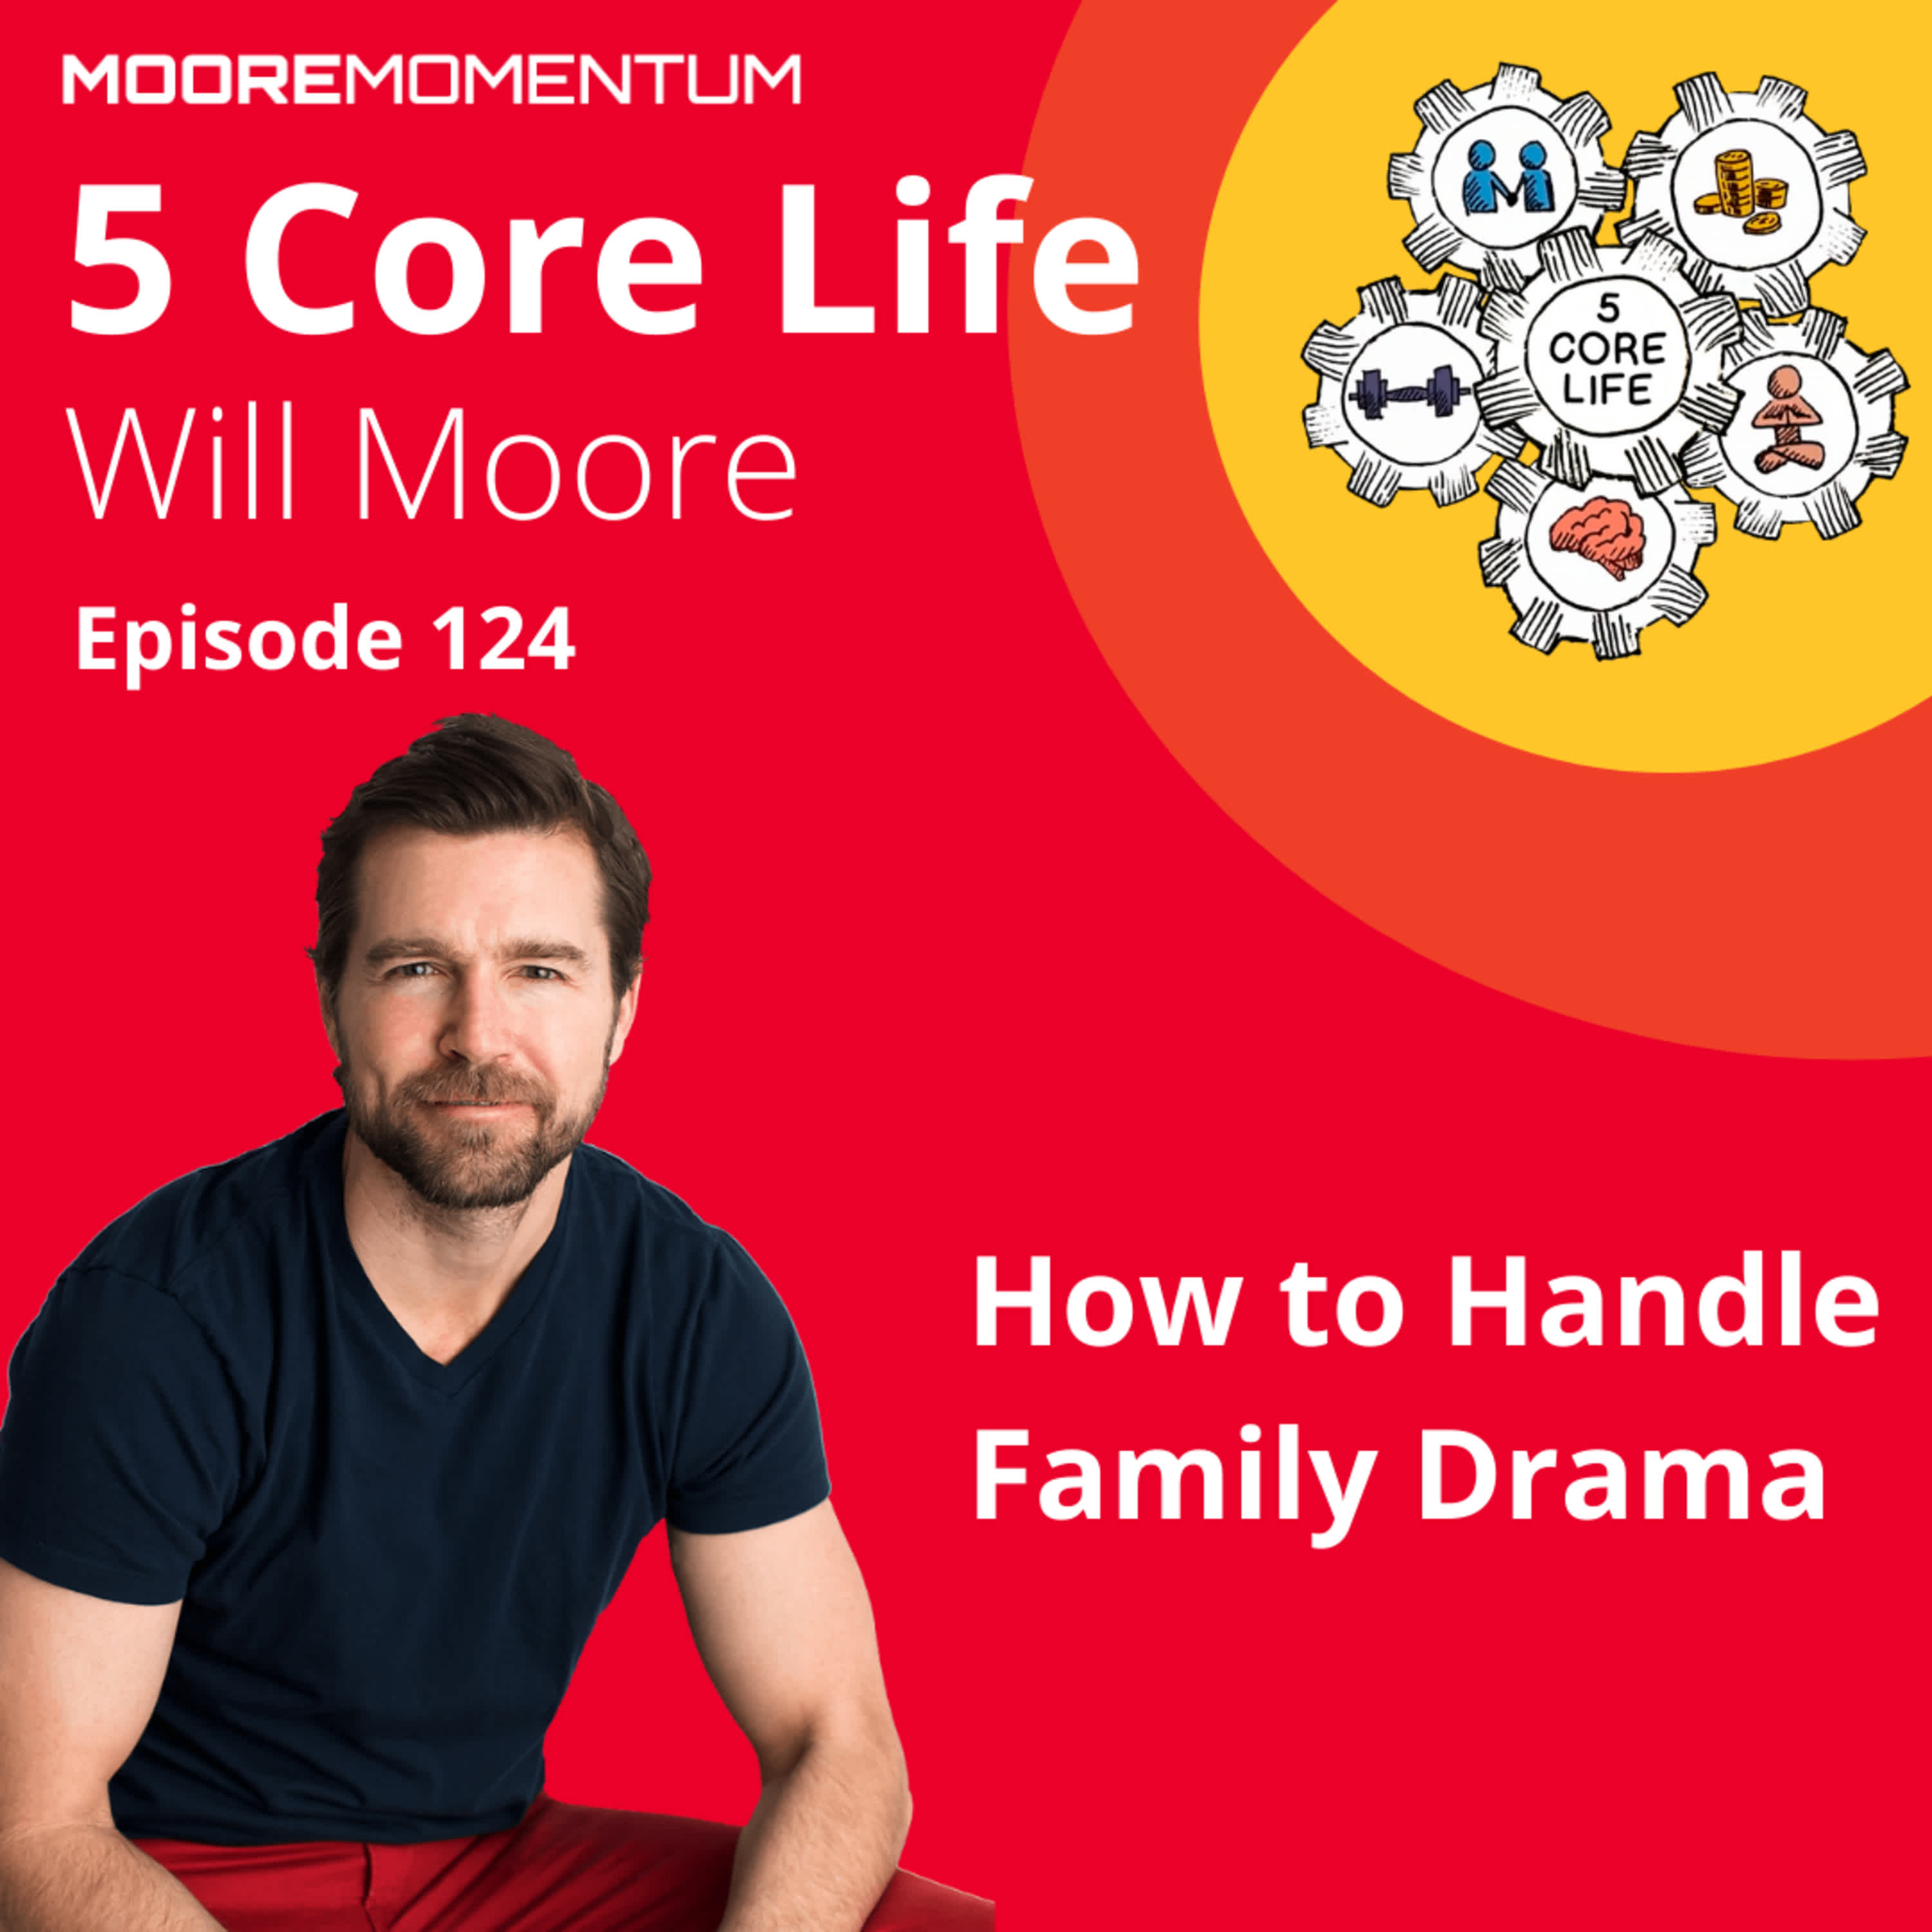 How Do You Handle Family Drama?